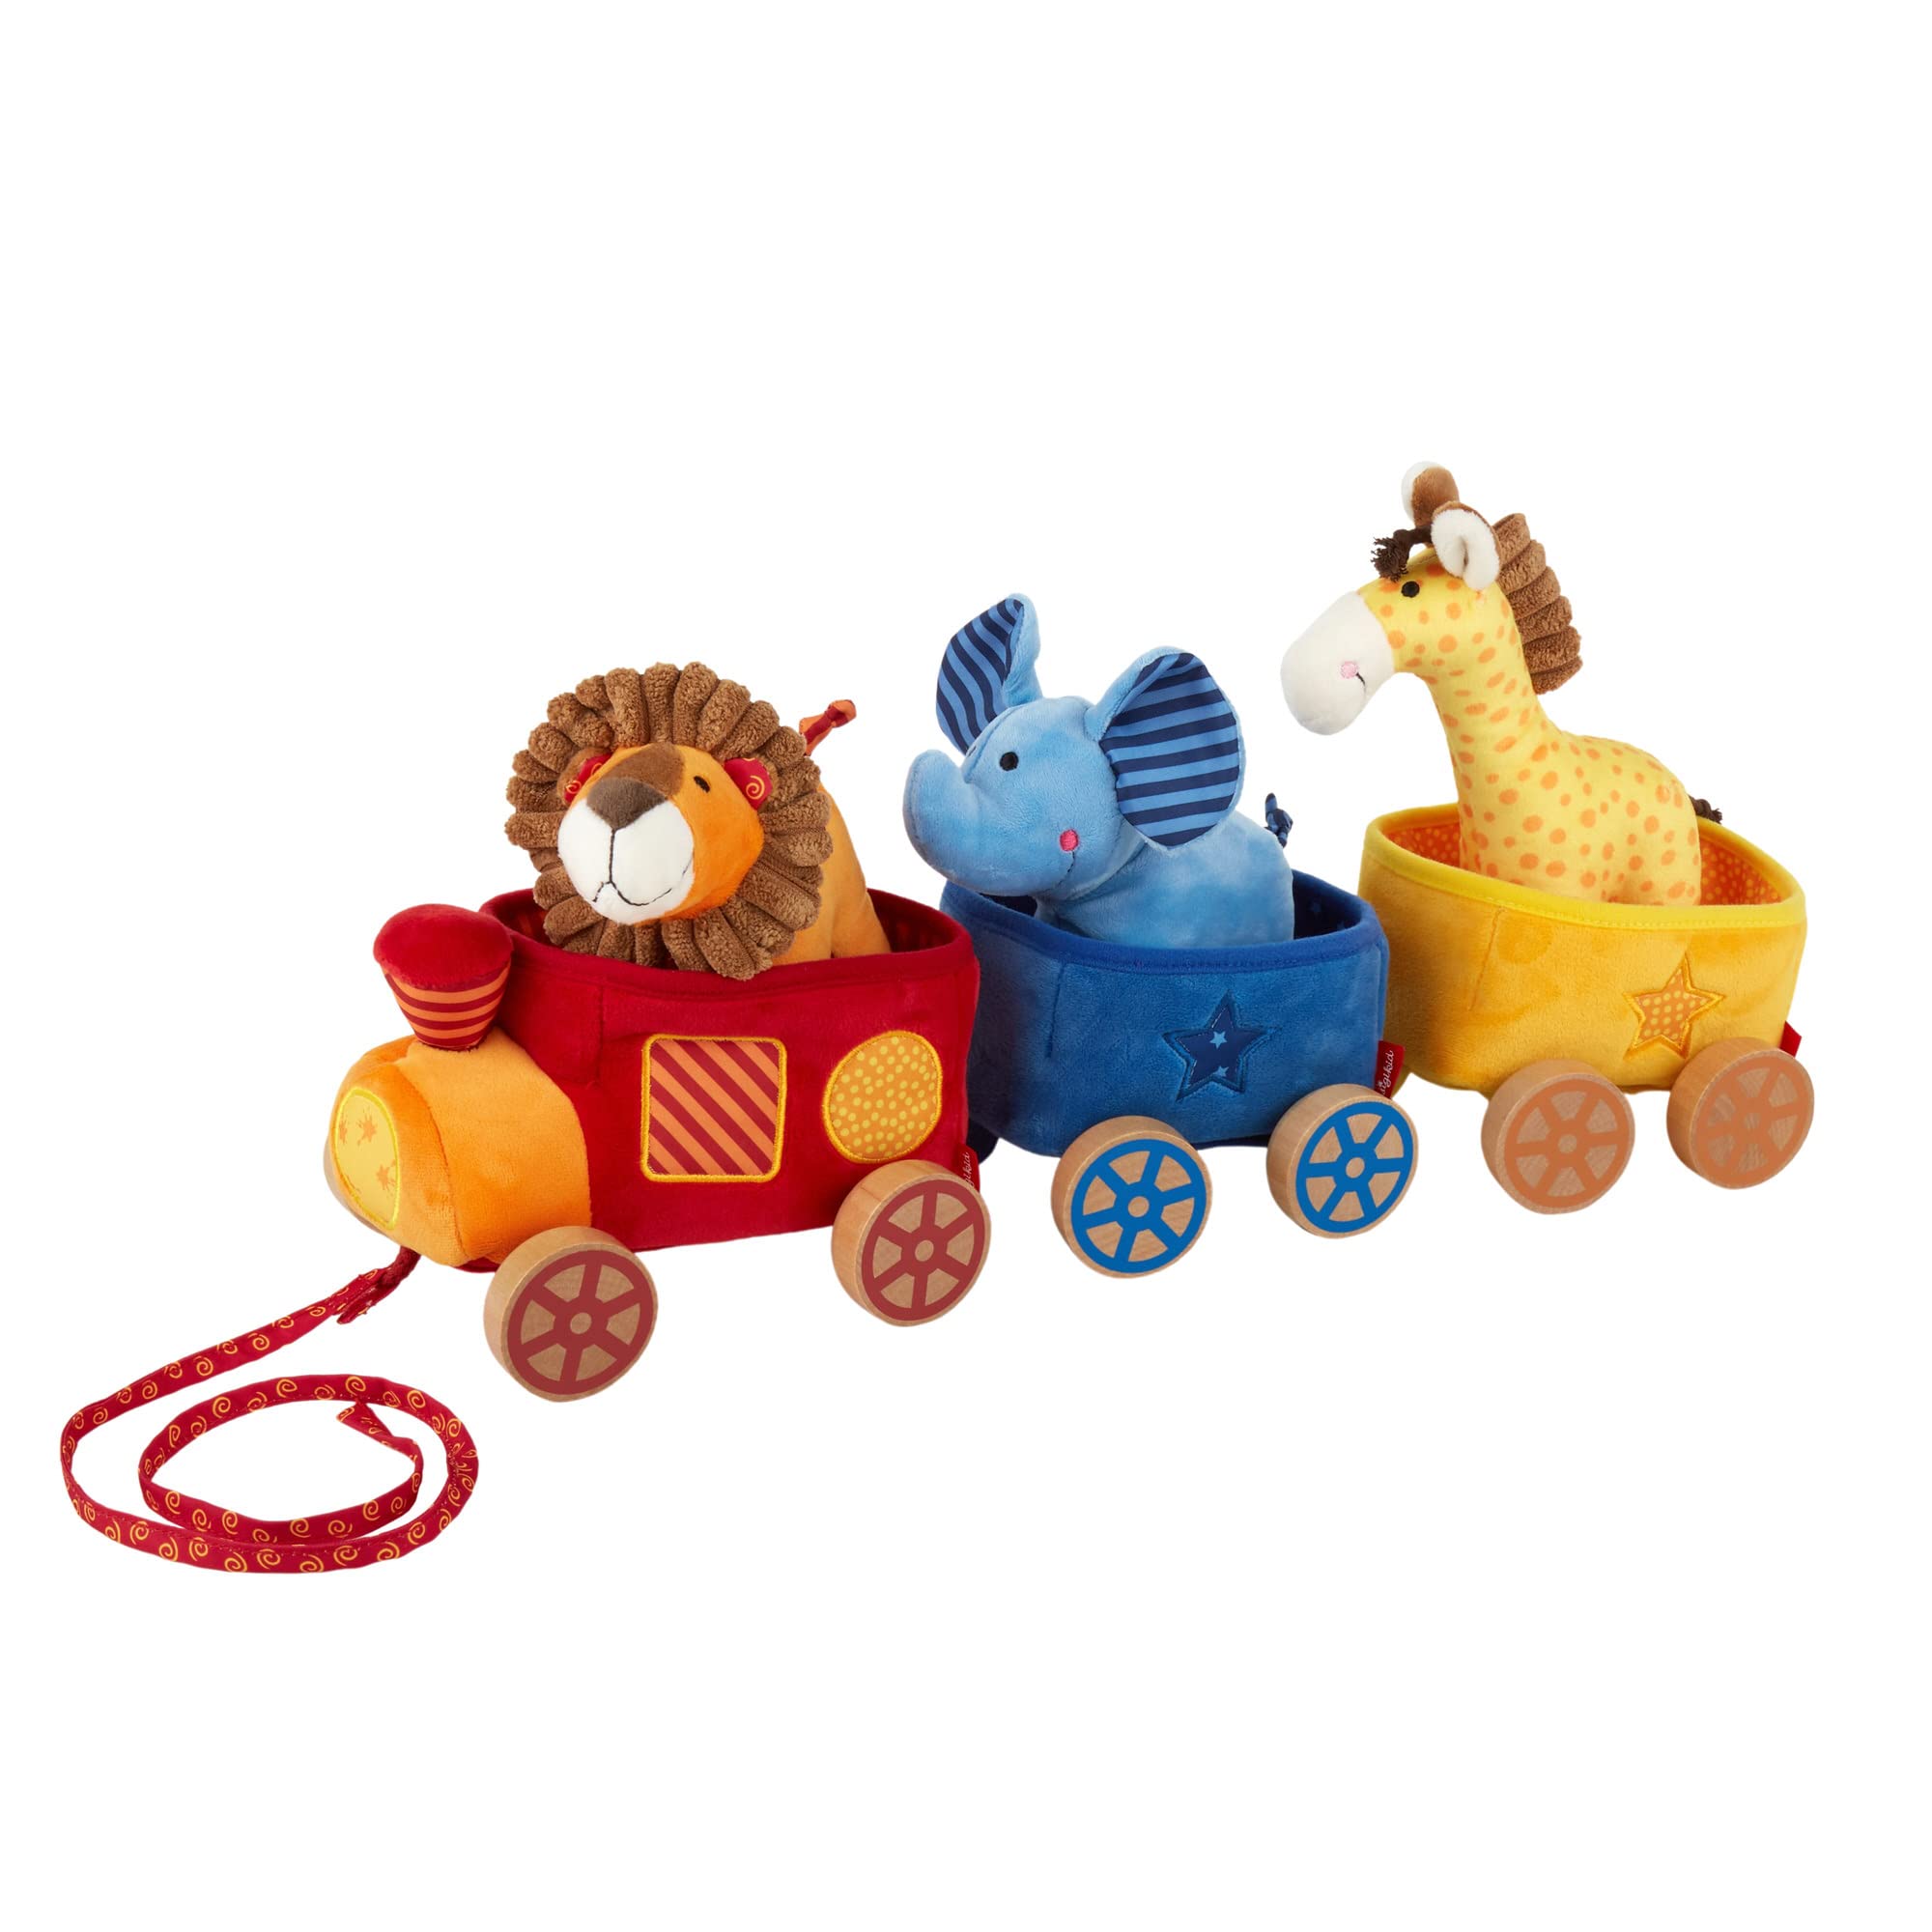 SIGIKID 41083 Safari-Zug Soft PlayQ Mädchen und Jungen Babyspielzeug empfohlen ab 3 Monaten mehrfarbig